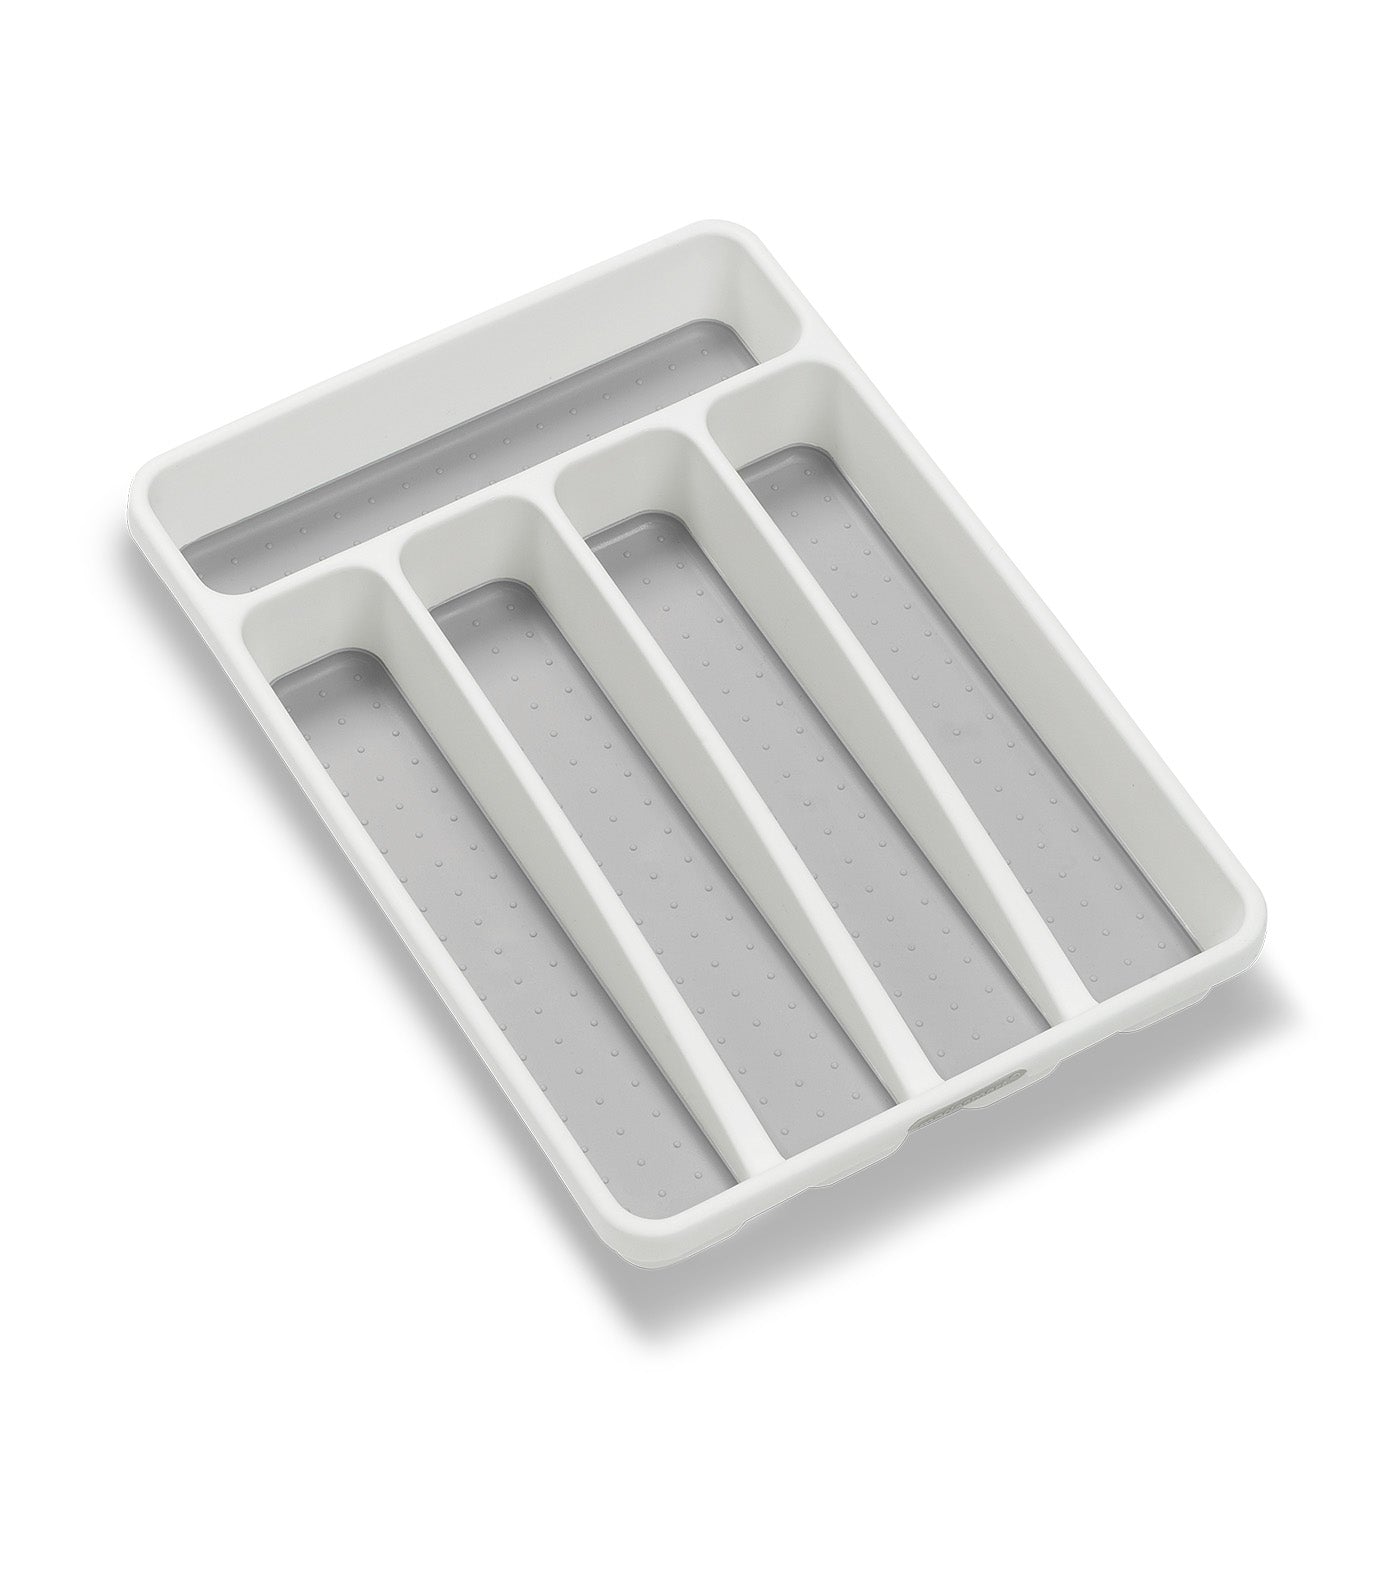 Mini Silverware Tray